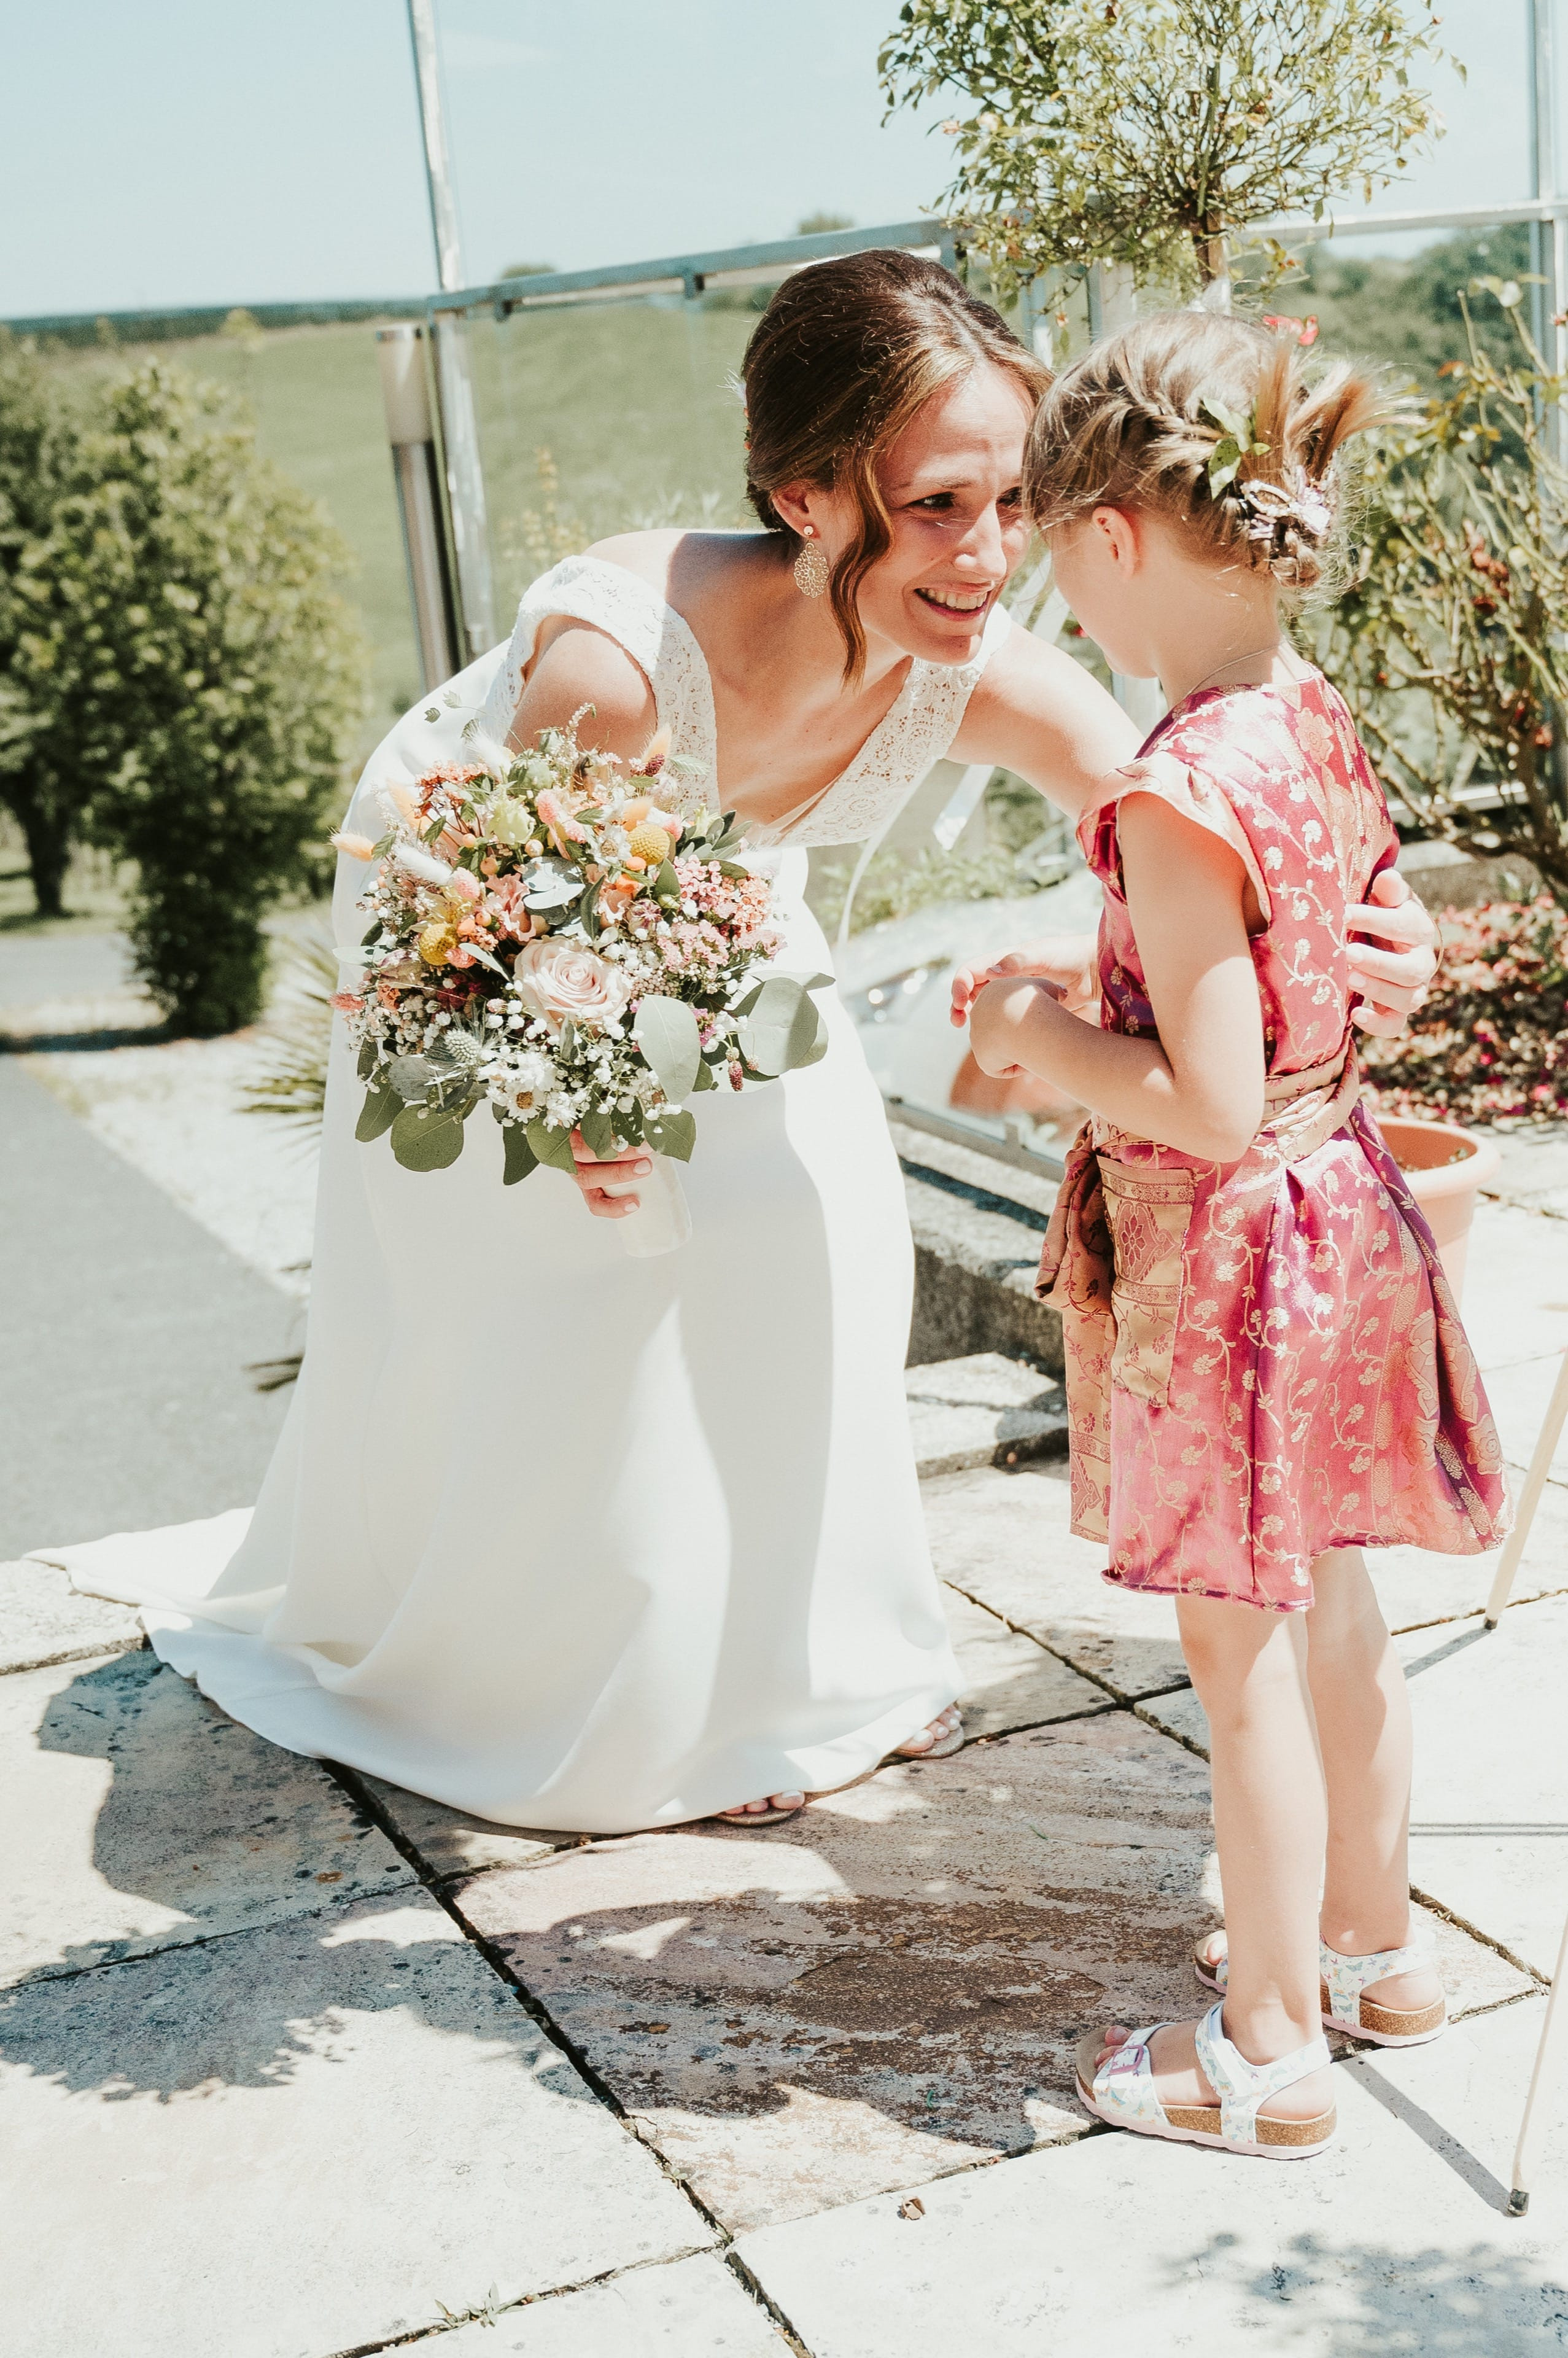 Eine Braut die sich bei ihrem Blumenmädchen für den Brautstrauß bedankt